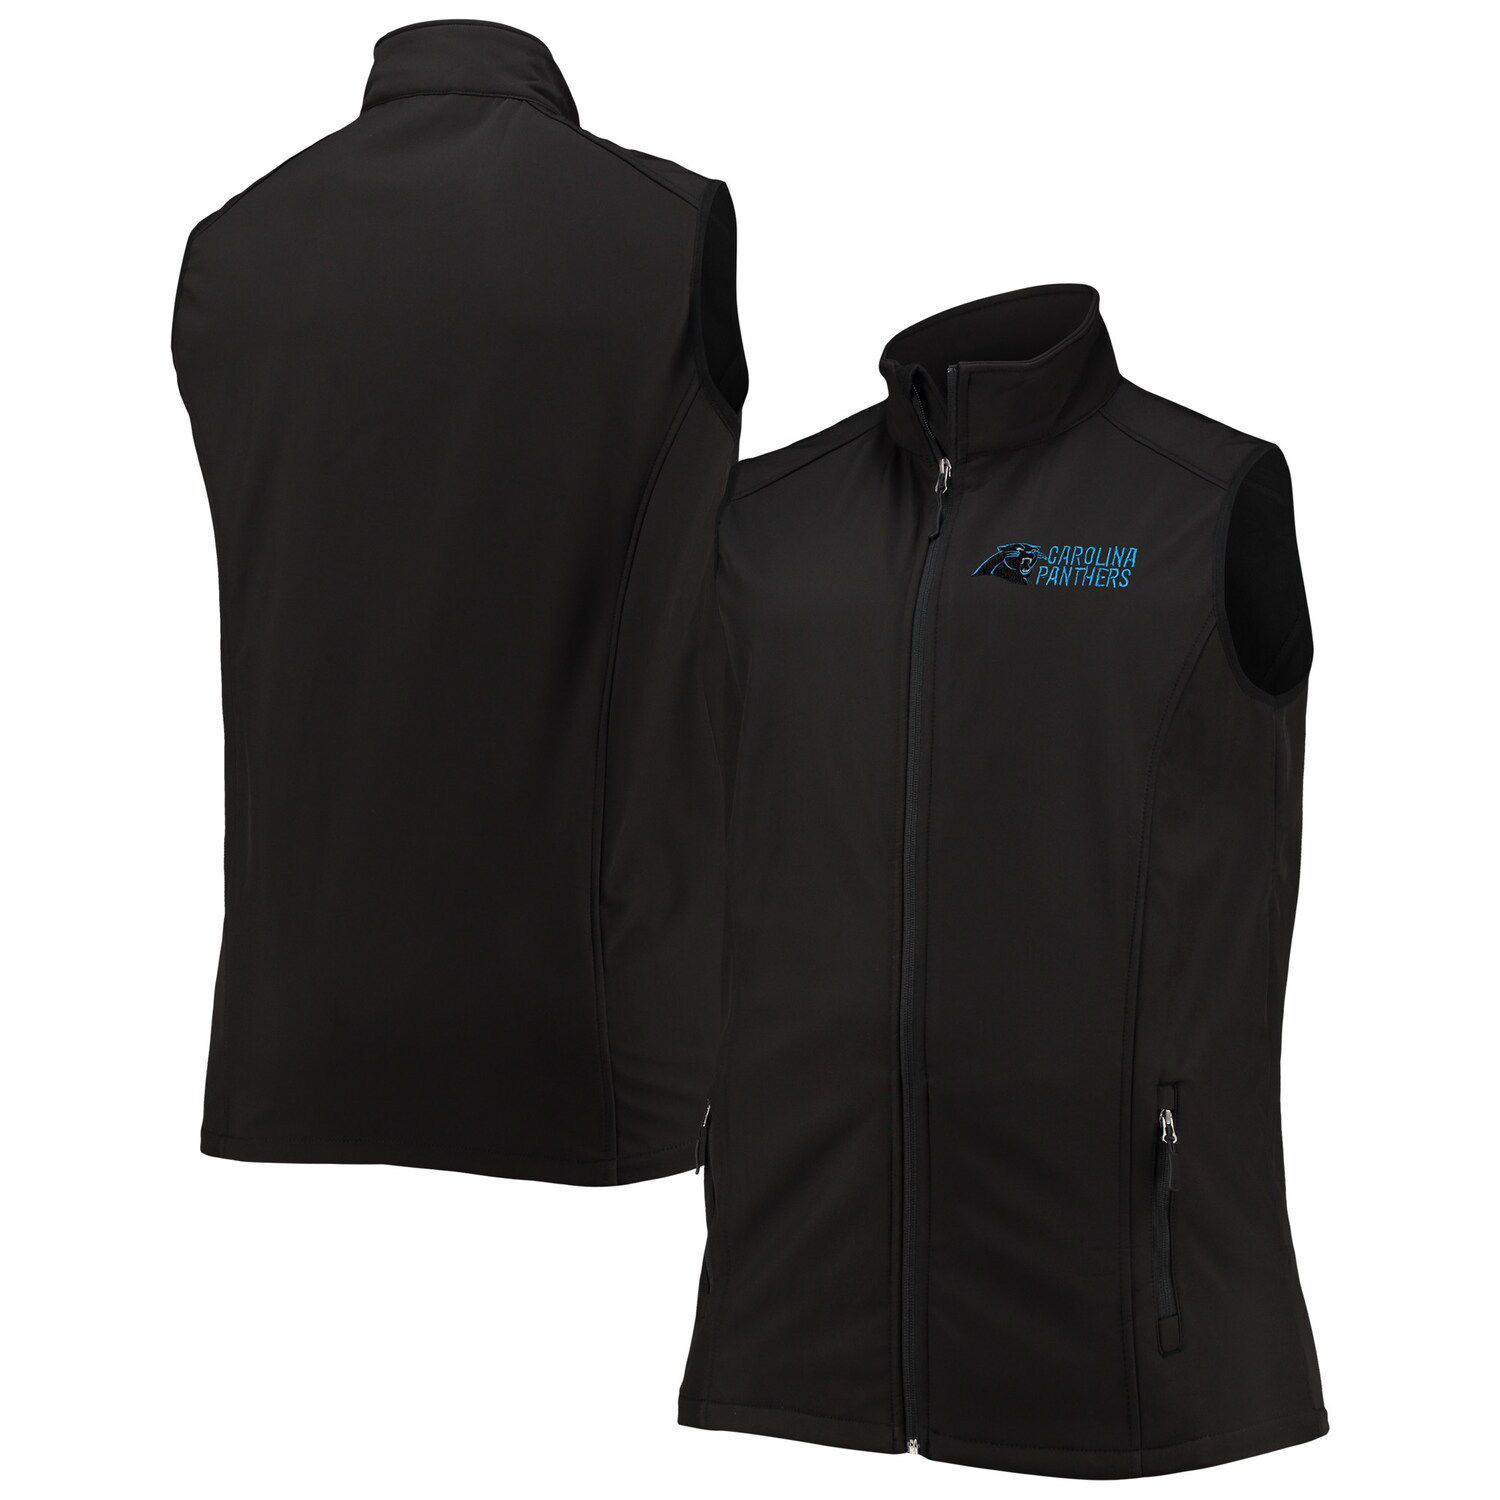 Image for Unbranded Men's Dunbrooke Black Carolina Panthers Big & Tall Archer Softshell Full-Zip Vest at Kohl's.